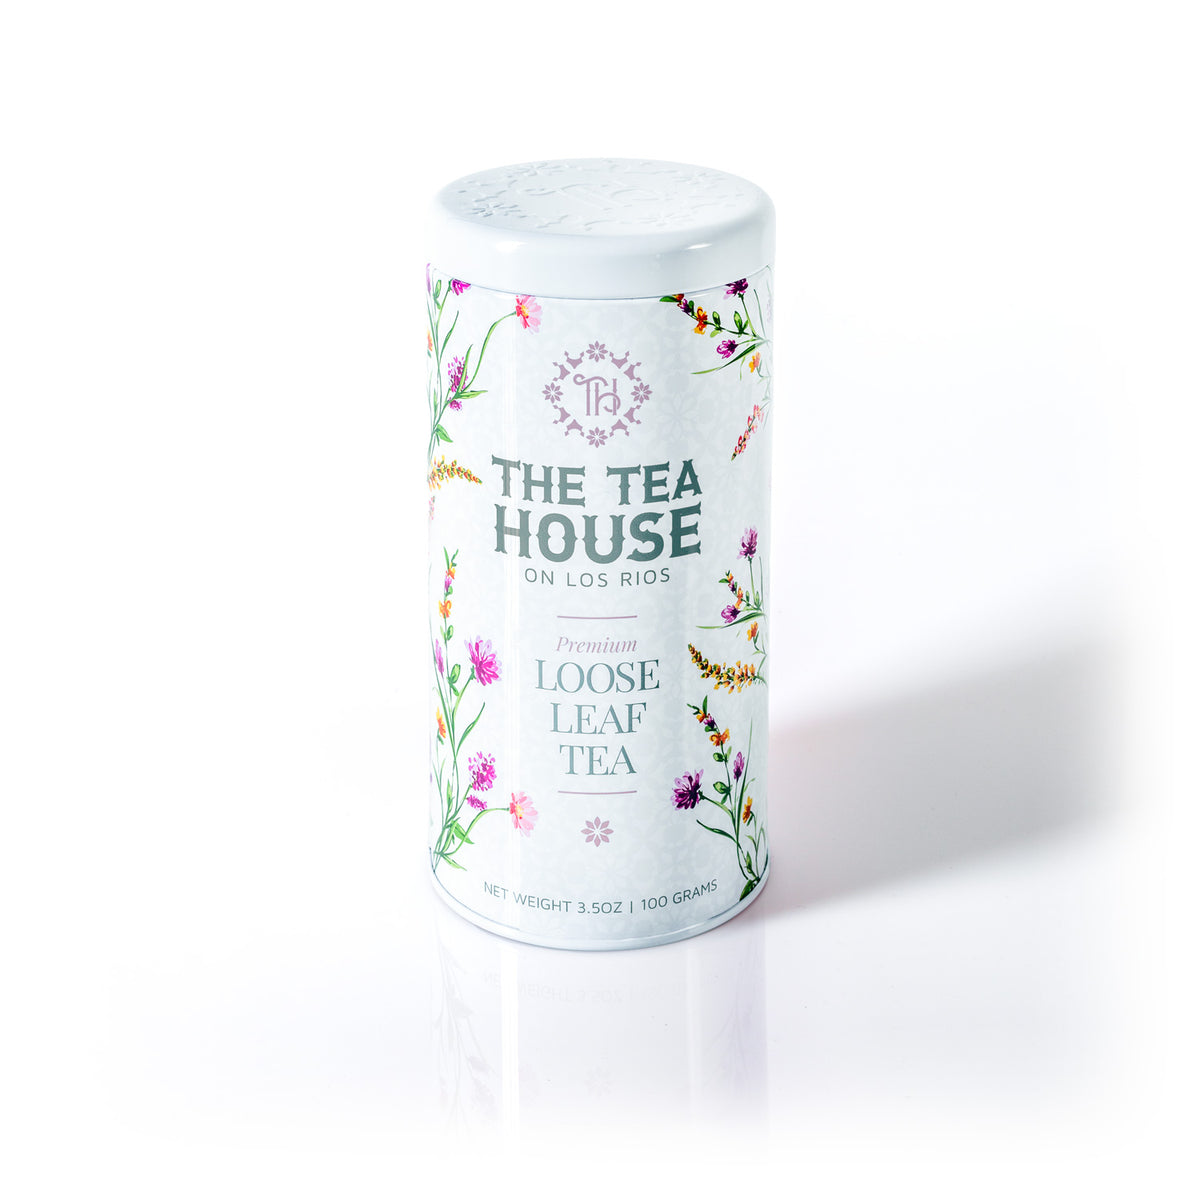 100g Loose Leaf Tea Tin by The Tea House on Los Rios - Fresh Arrivals